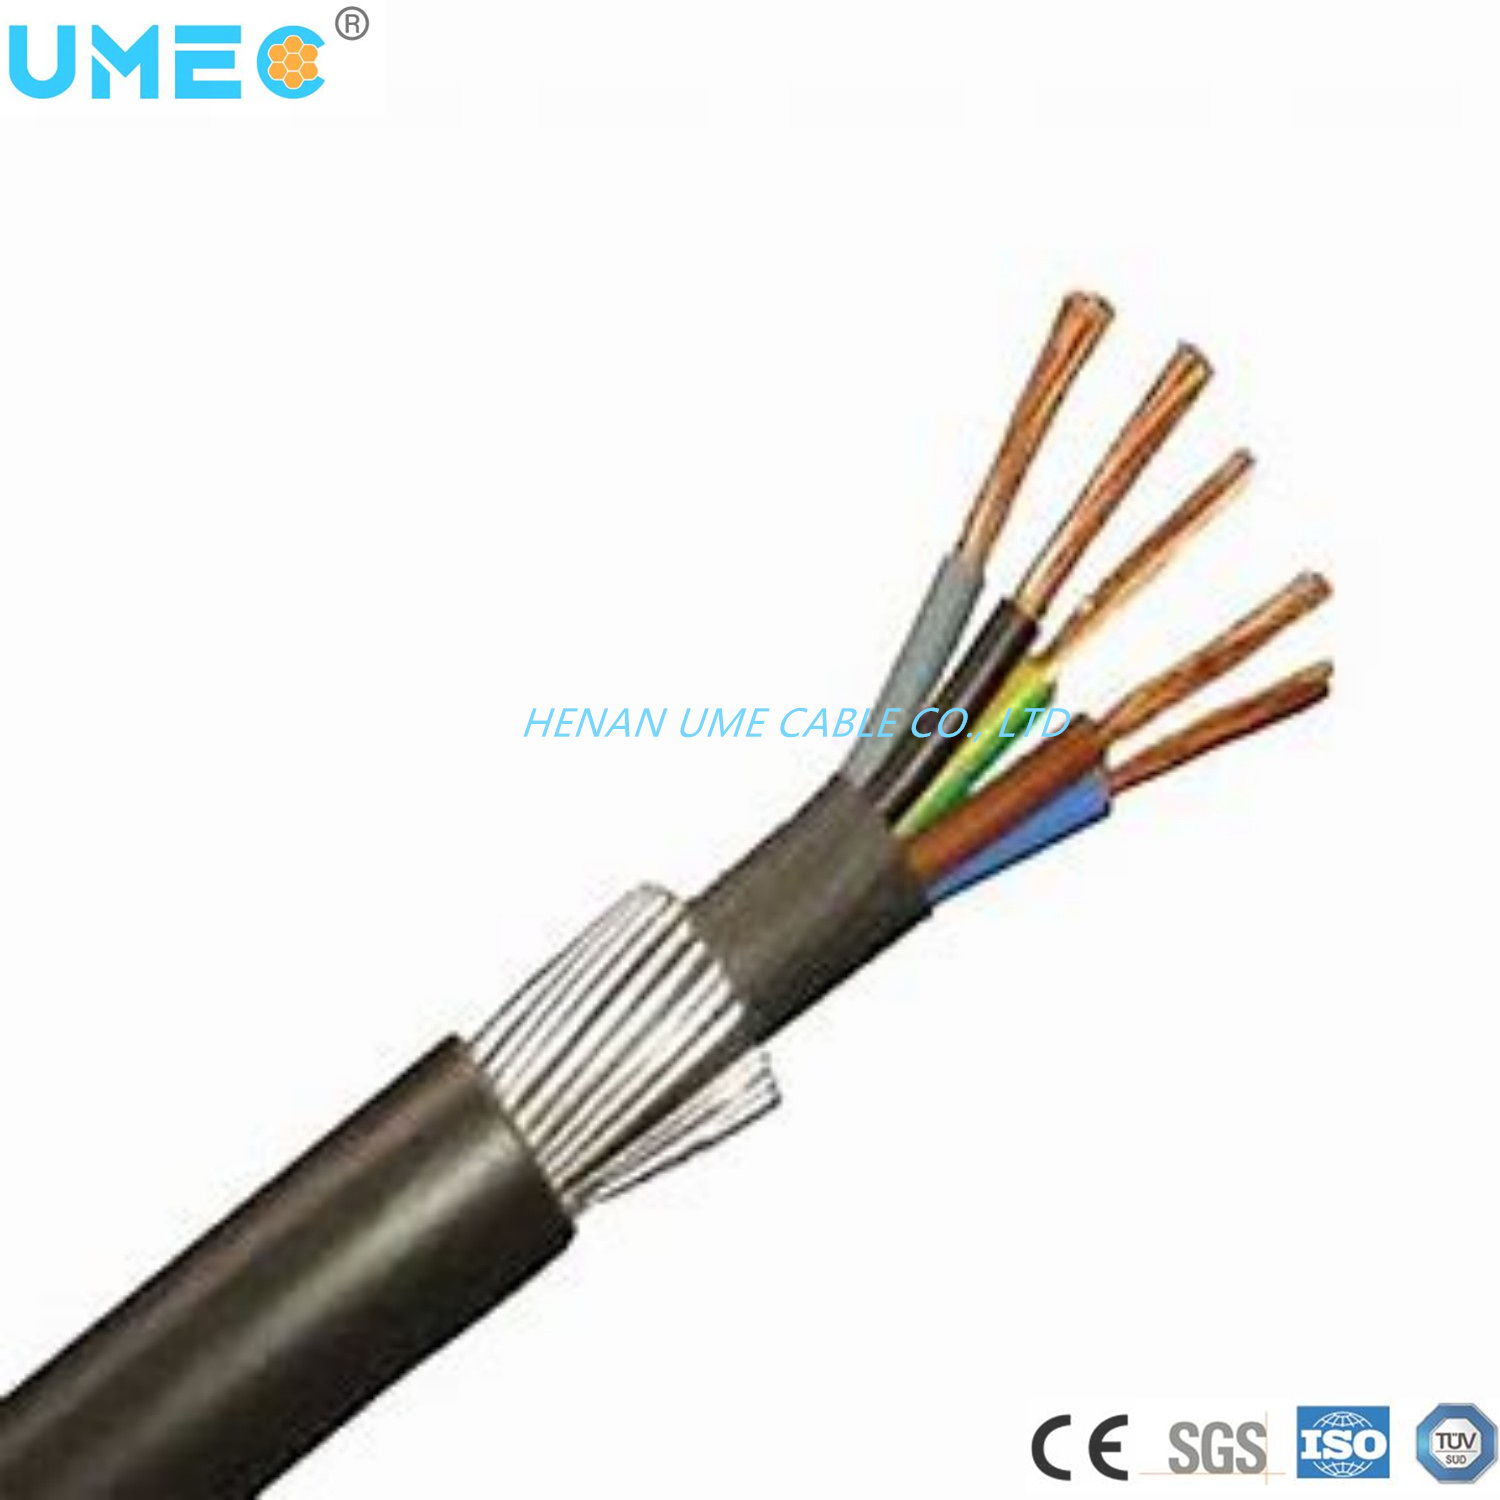 
                Basse tension 0.6/1kv Conducteurs de cuivre/aluminium Câble d′alimentation souterraine multicoeurs
            